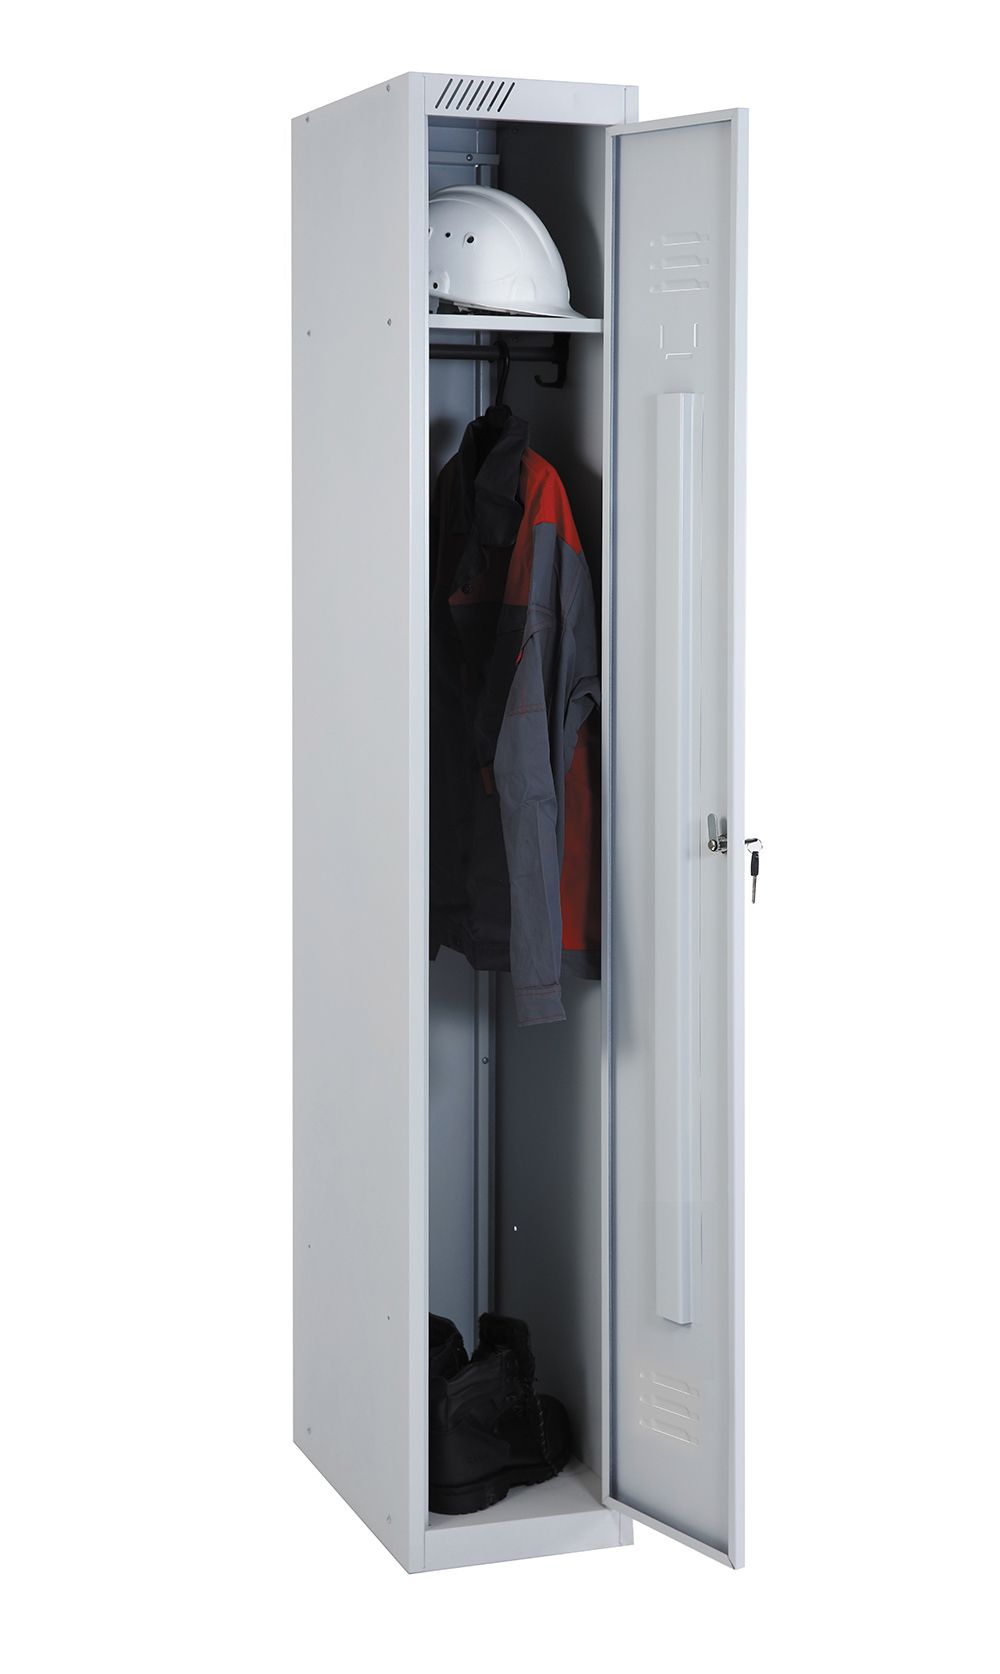 Шкаф для одежды ШРС 11-400 ДС